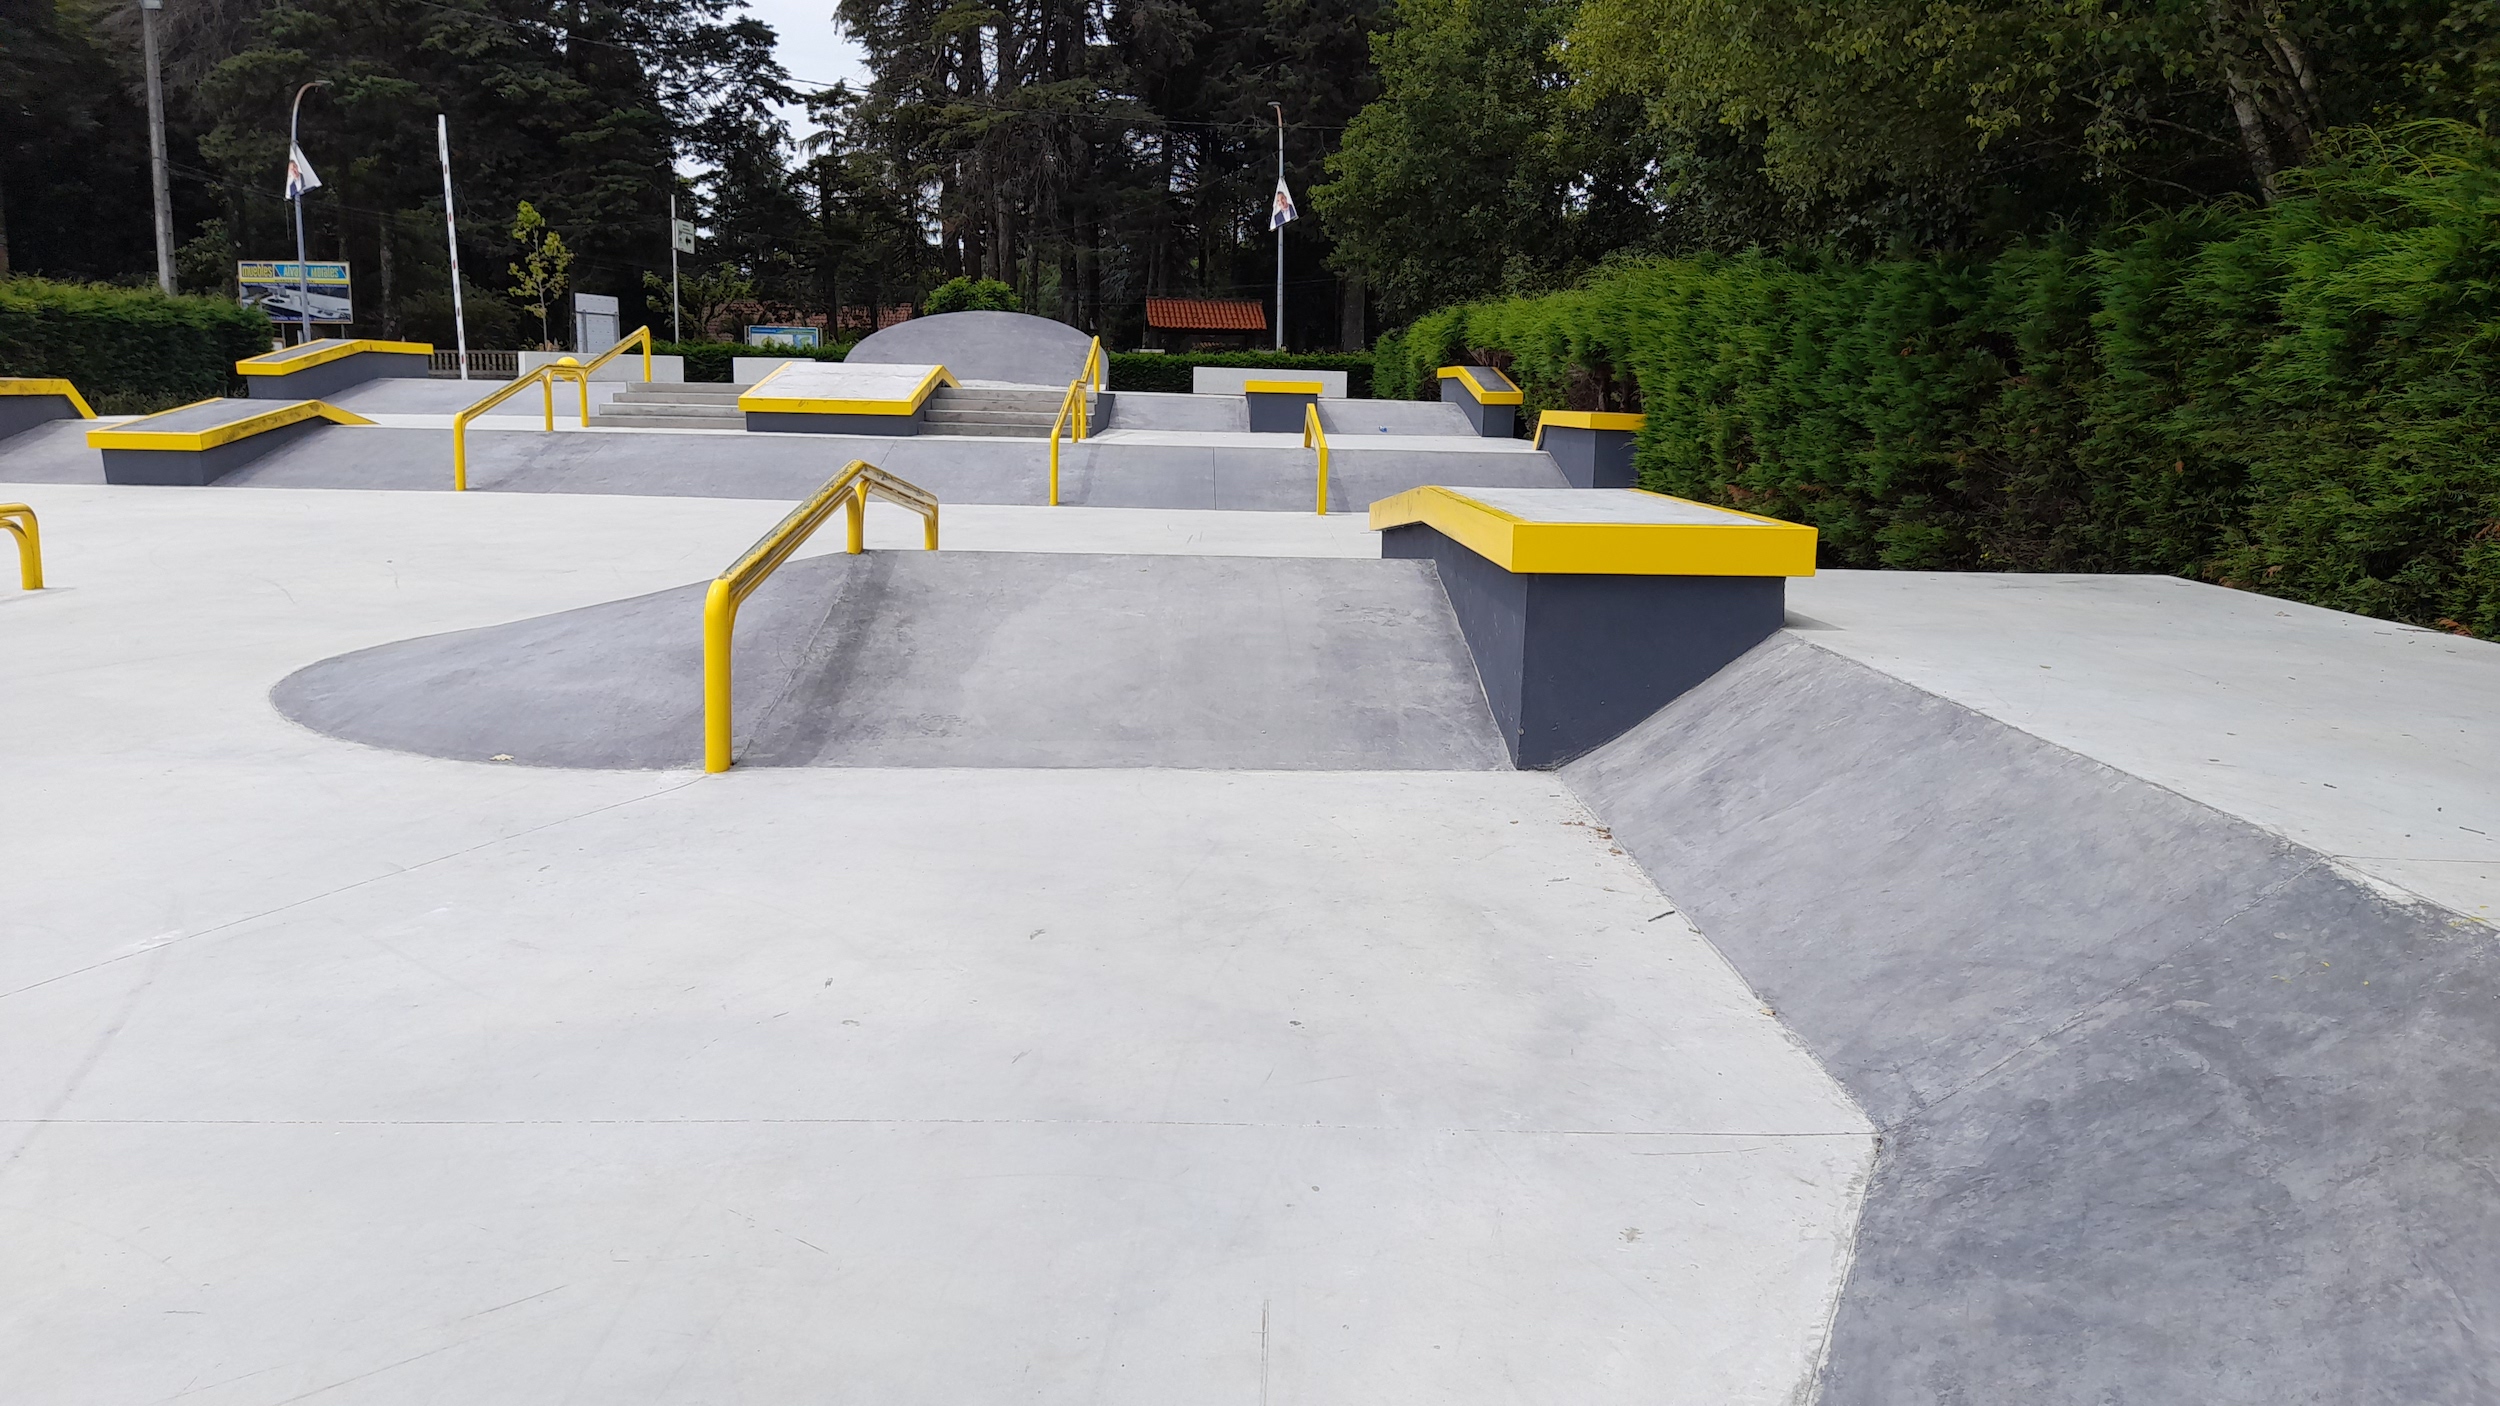 A Cañiza skatepark